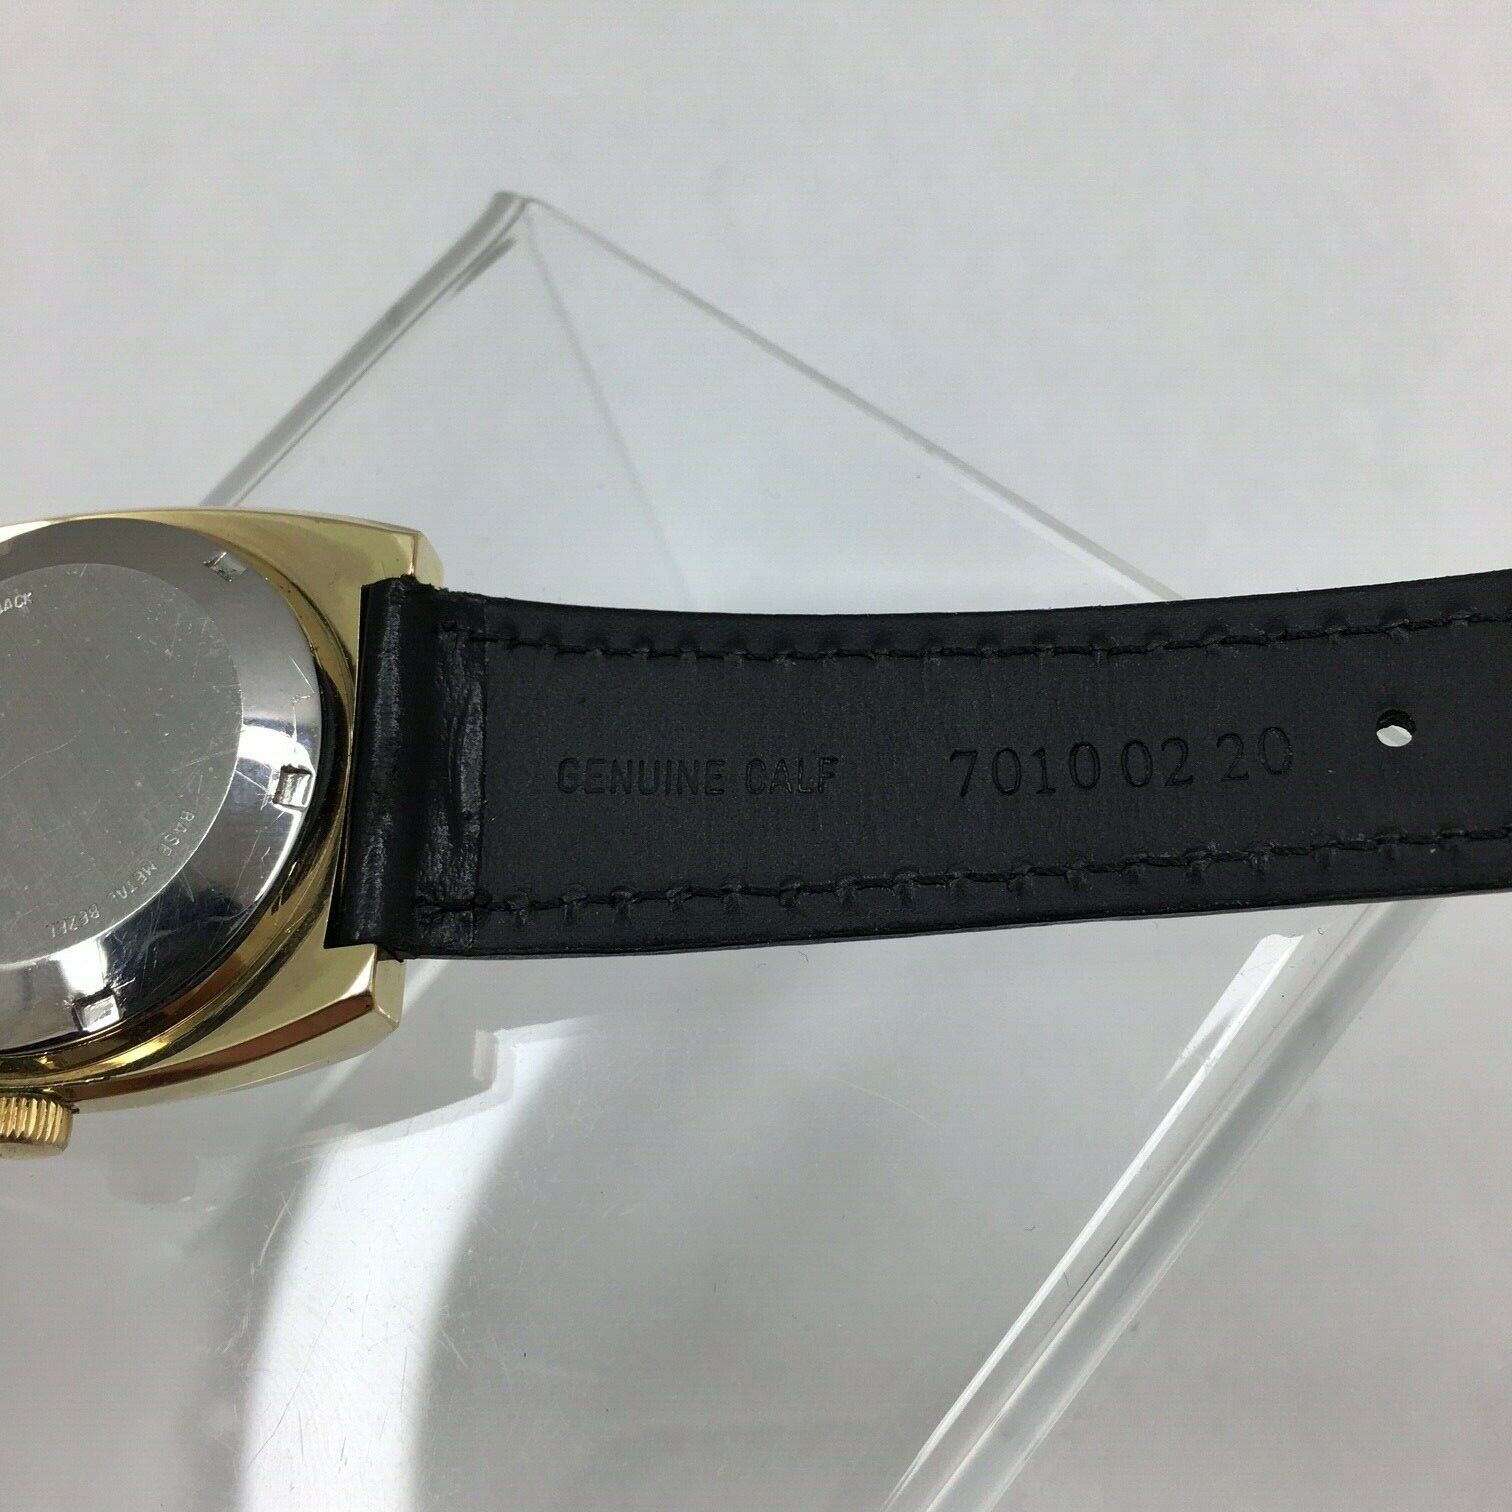 Montre-bracelet automatique Longines Olympian Circa. Années 1970 Réf. 1038 Plaqué Or